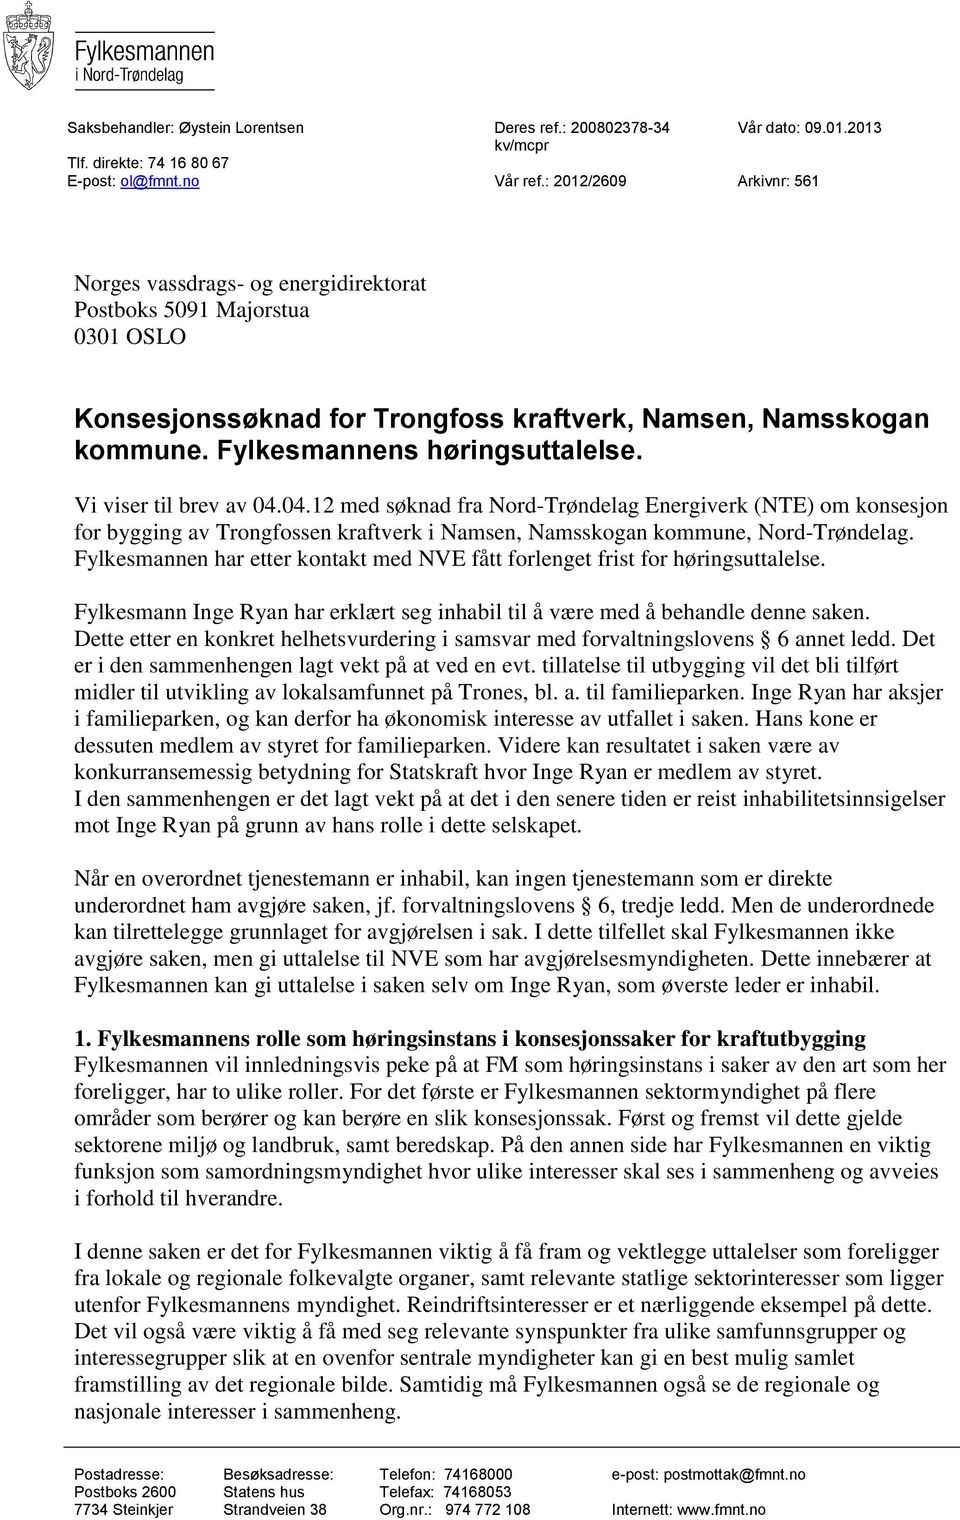 Vi viser til brev av 04.04.12 med søknad fra Nord-Trøndelag Energiverk (NTE) om konsesjon for bygging av Trongfossen kraftverk i Namsen, Namsskogan kommune, Nord-Trøndelag.